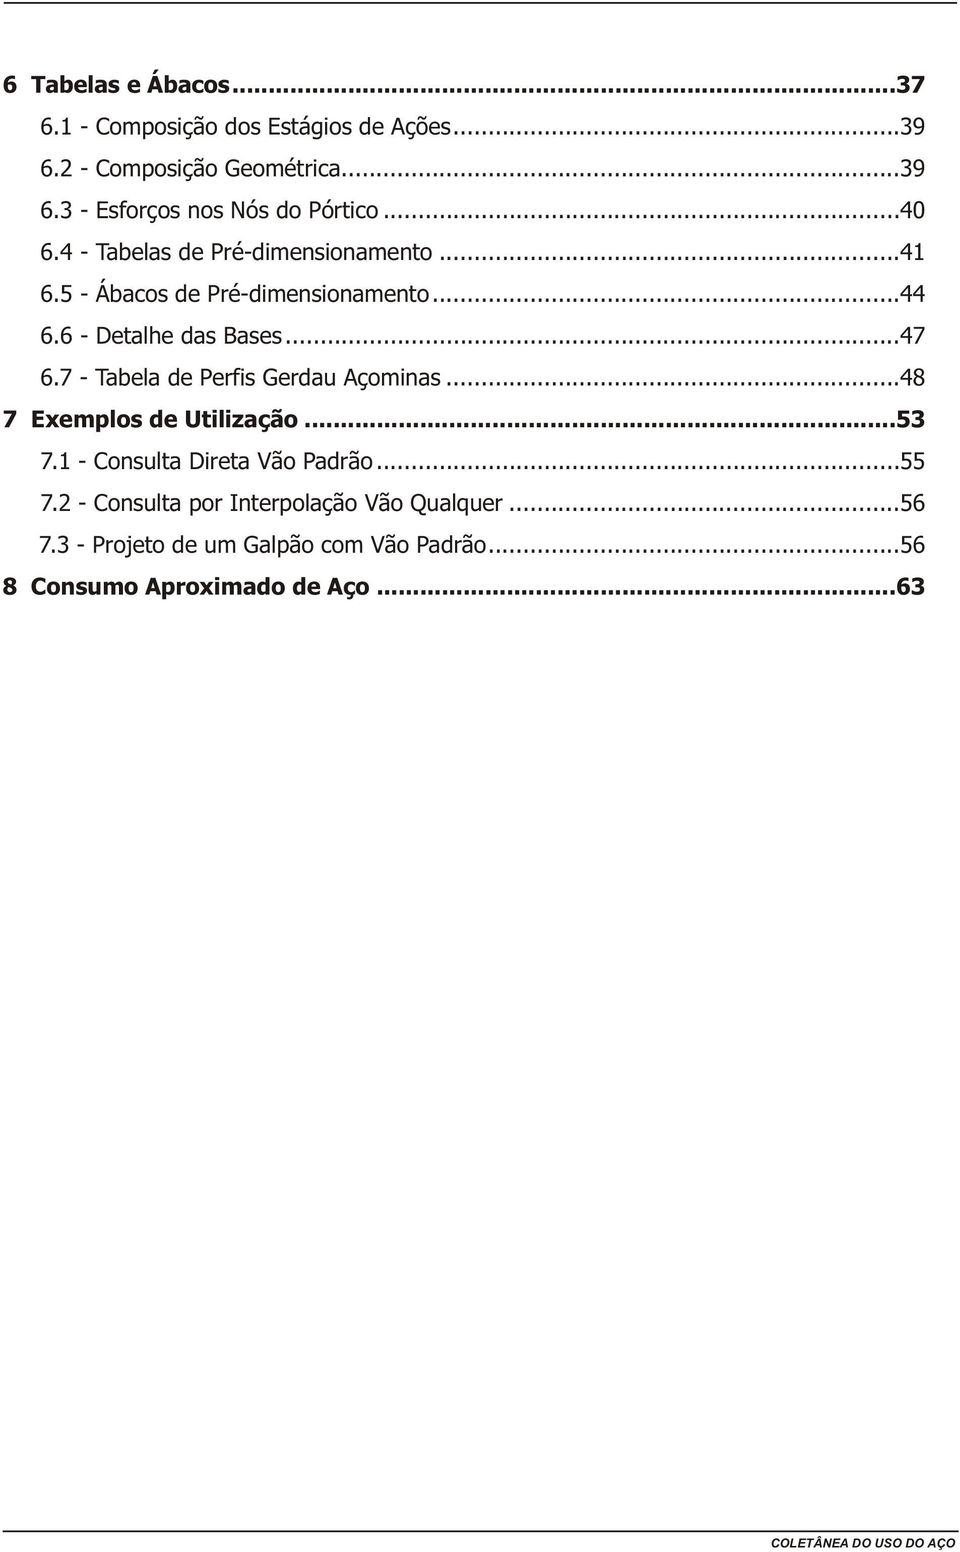 7 - Tabela de Perfis Gerdau Açominas...48 7 Exemplos de Utilização...53 7.1 - Consulta Direta Vão Padrão...55 7.